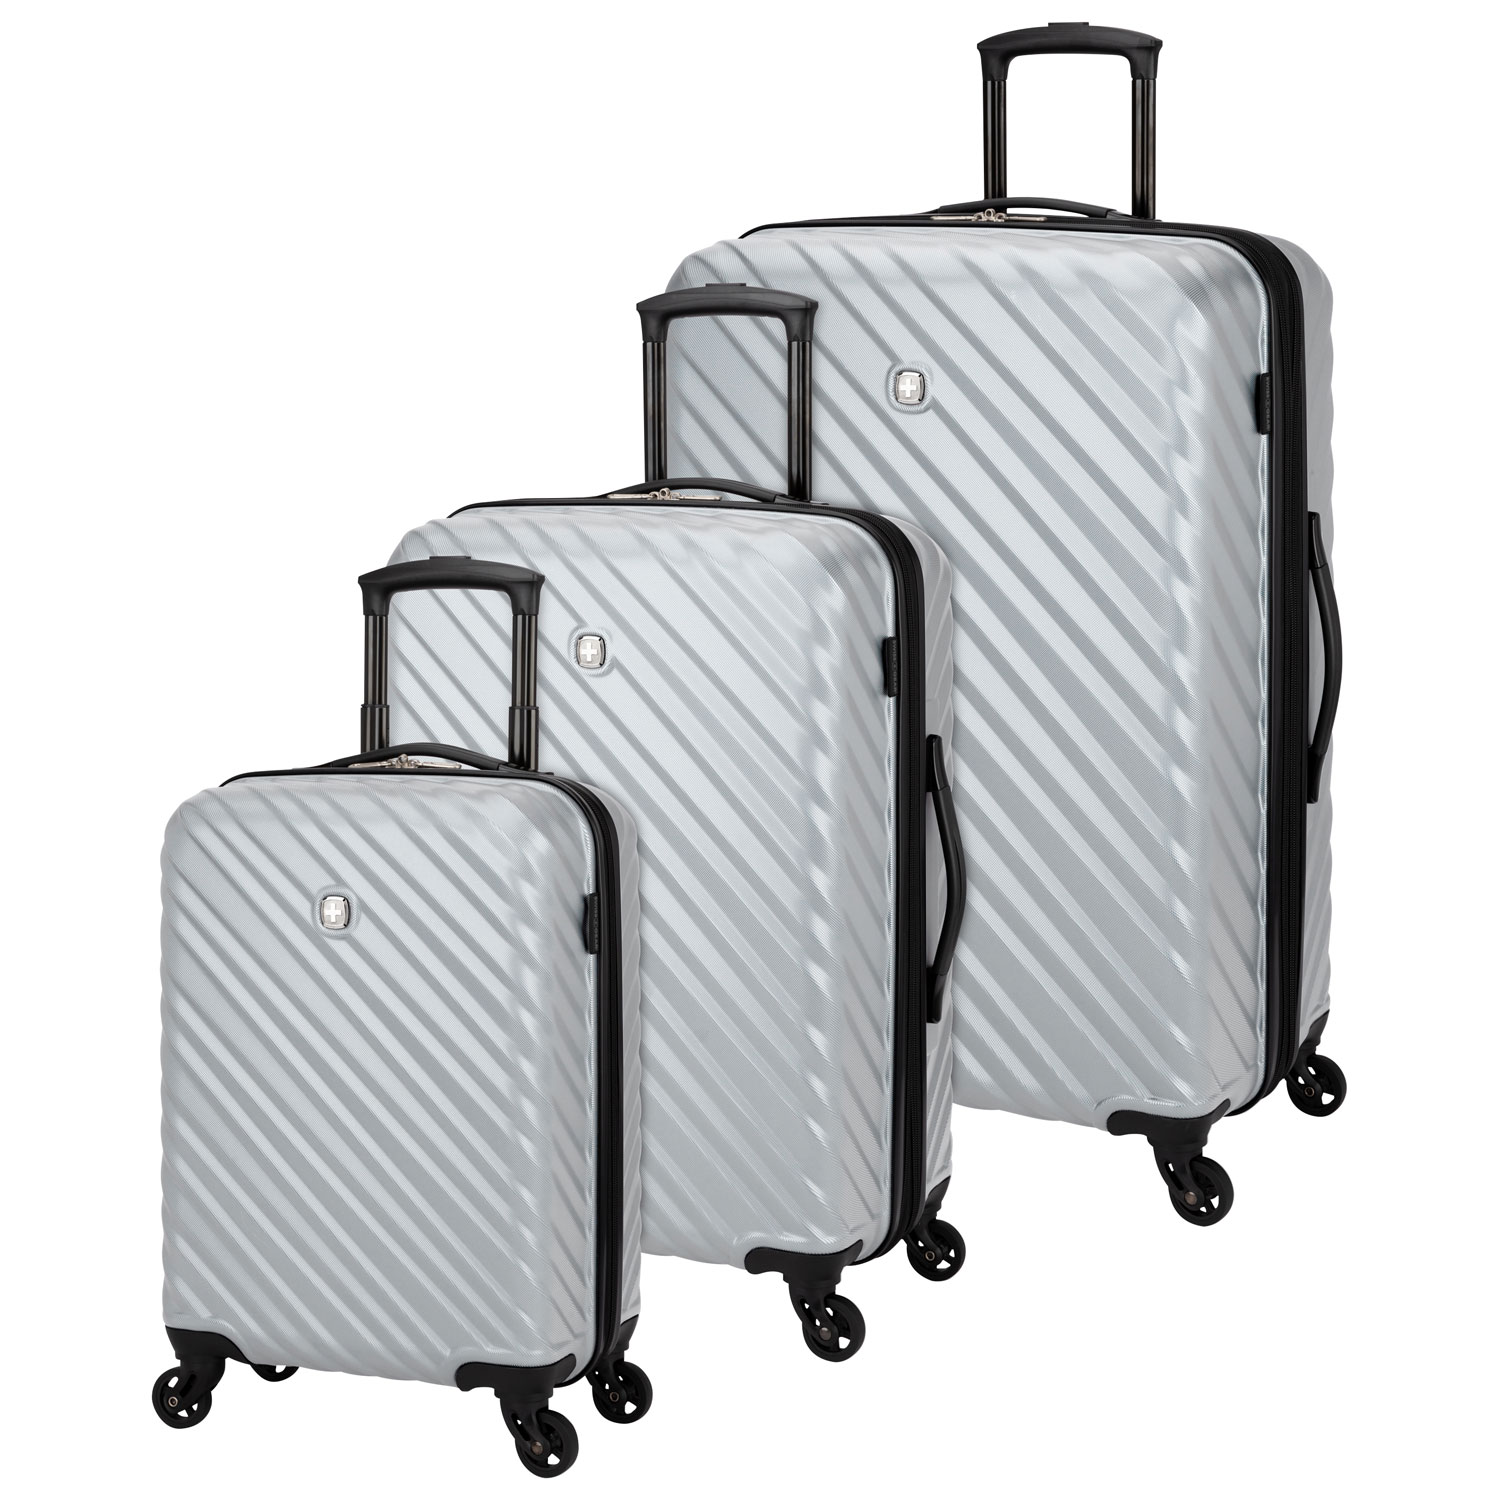 Luggage u0026 Luggage Sets | Best Buy Canada